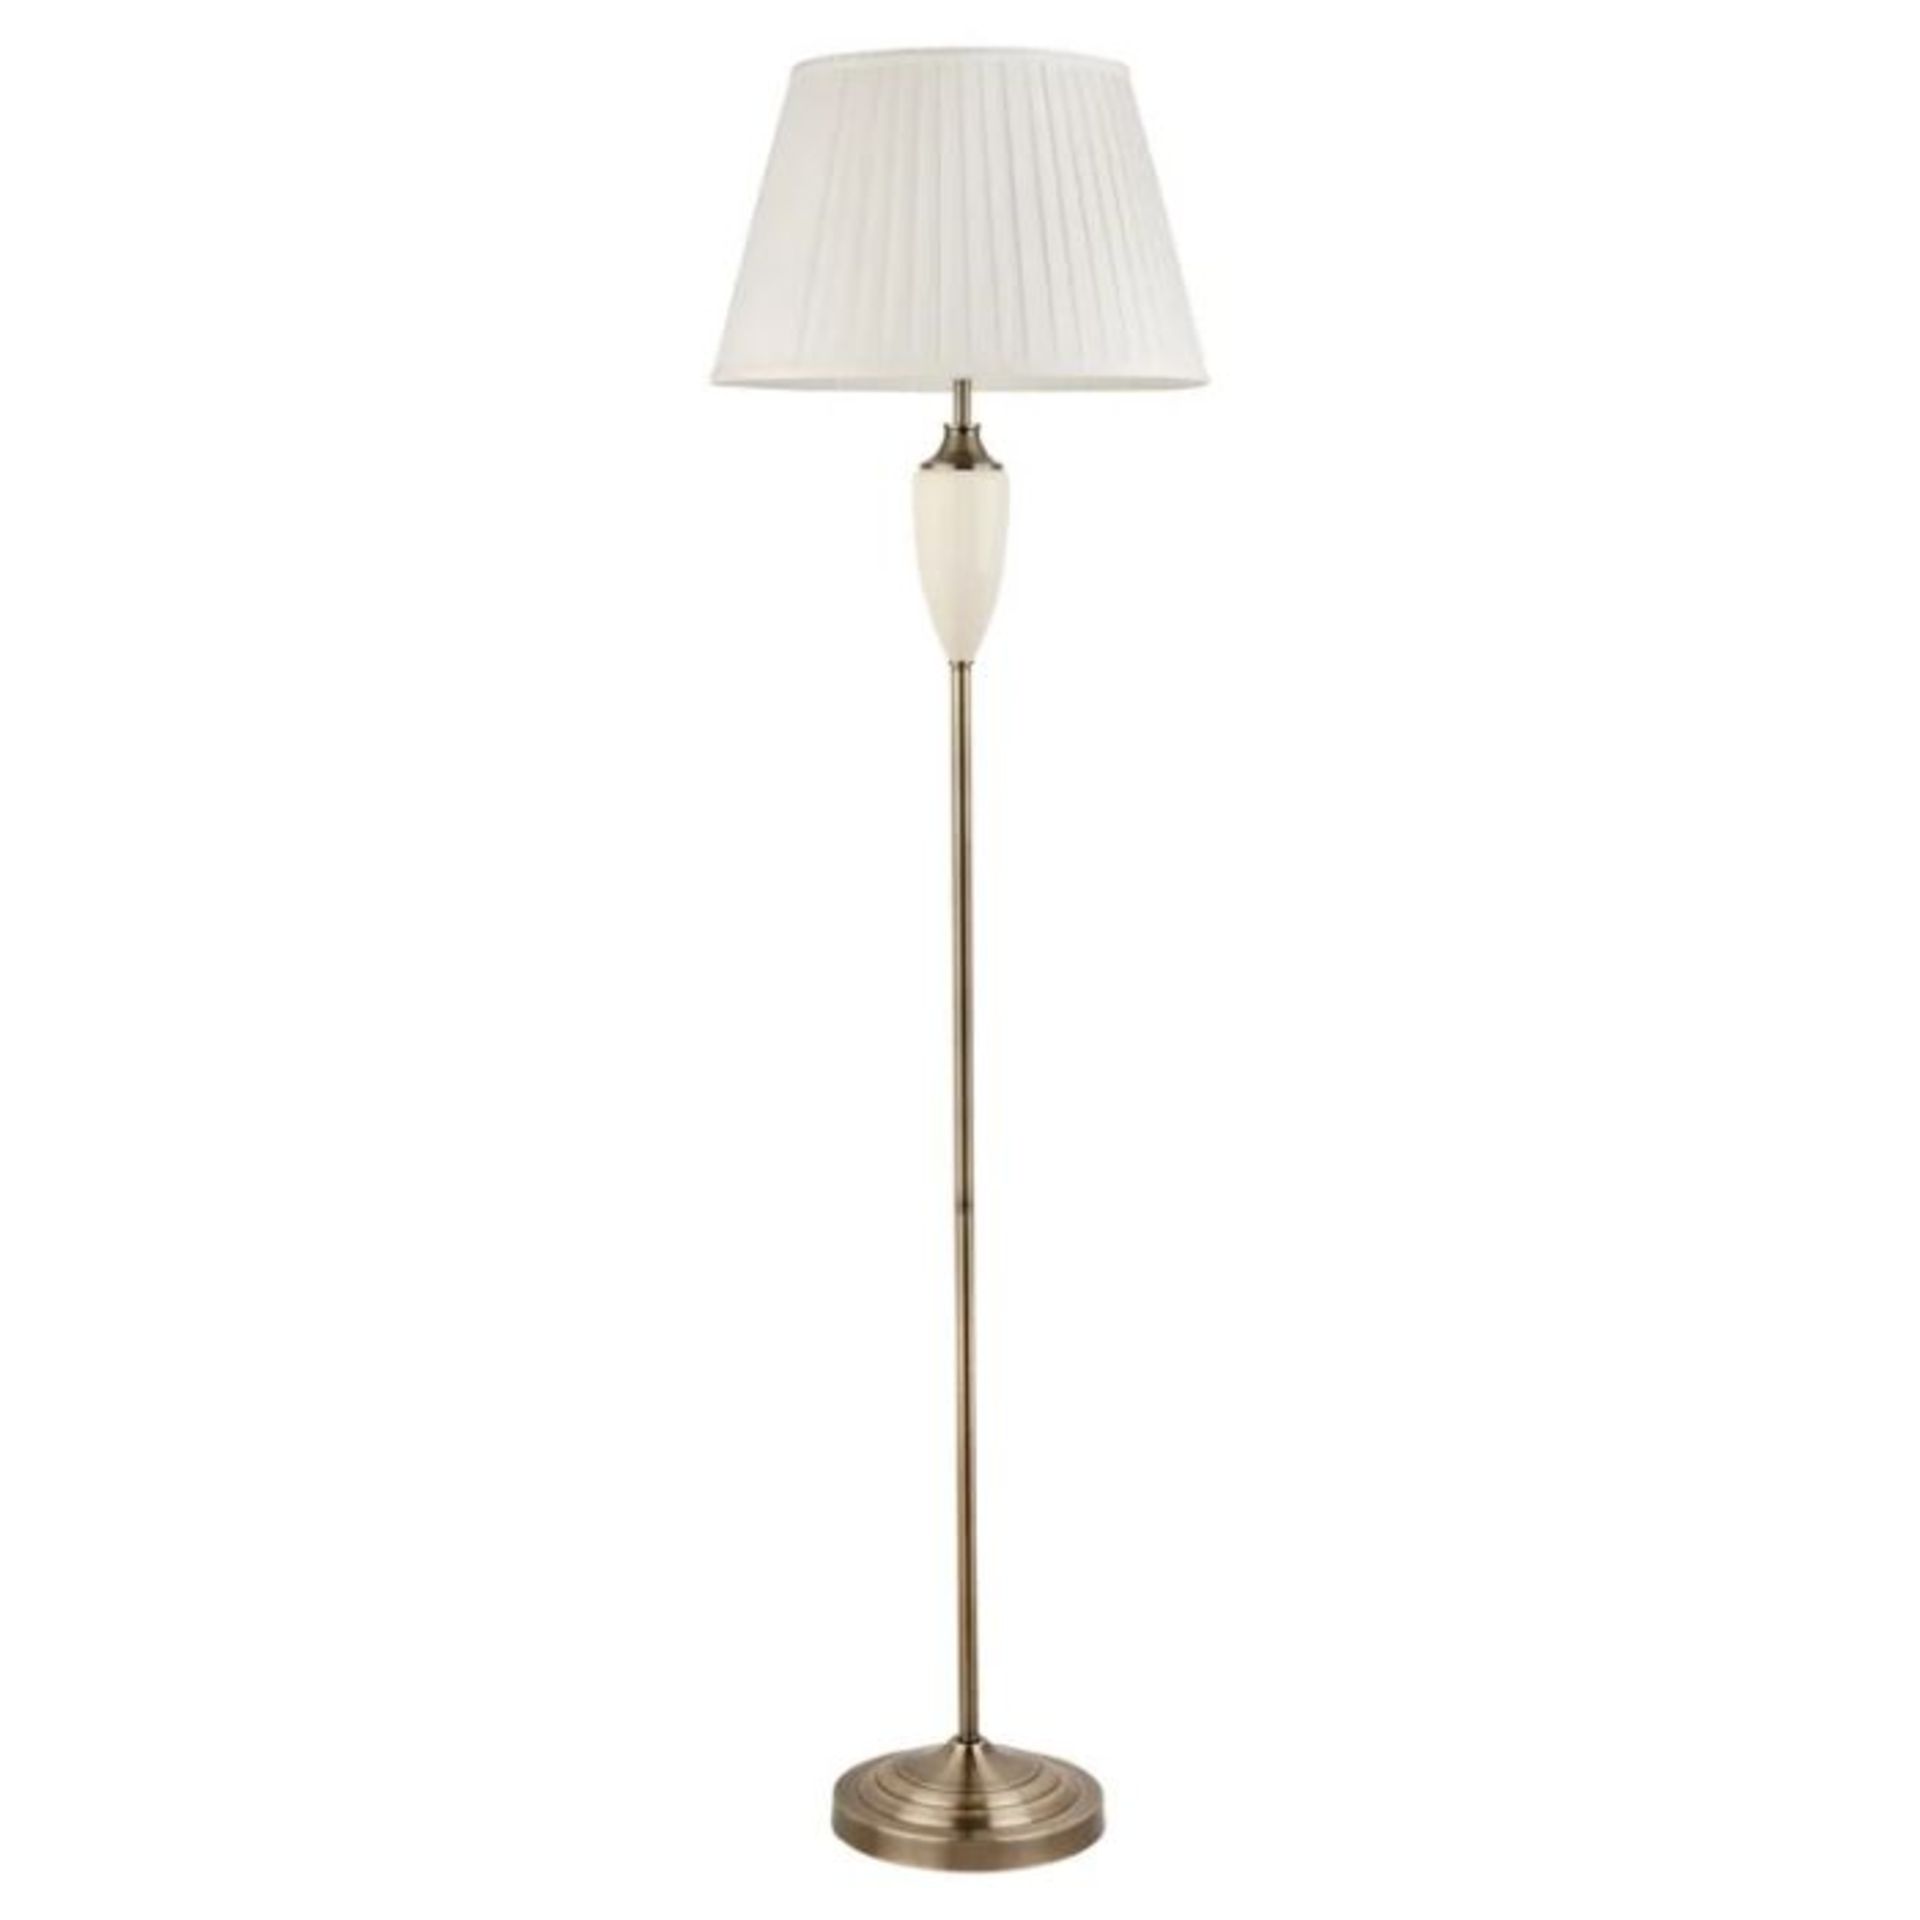 Astoria Grand, Bonnett 154cm Traditional Floor Lamp (ANTIQUE BRASS & WHITE SHADE) - RRP £84.99 (